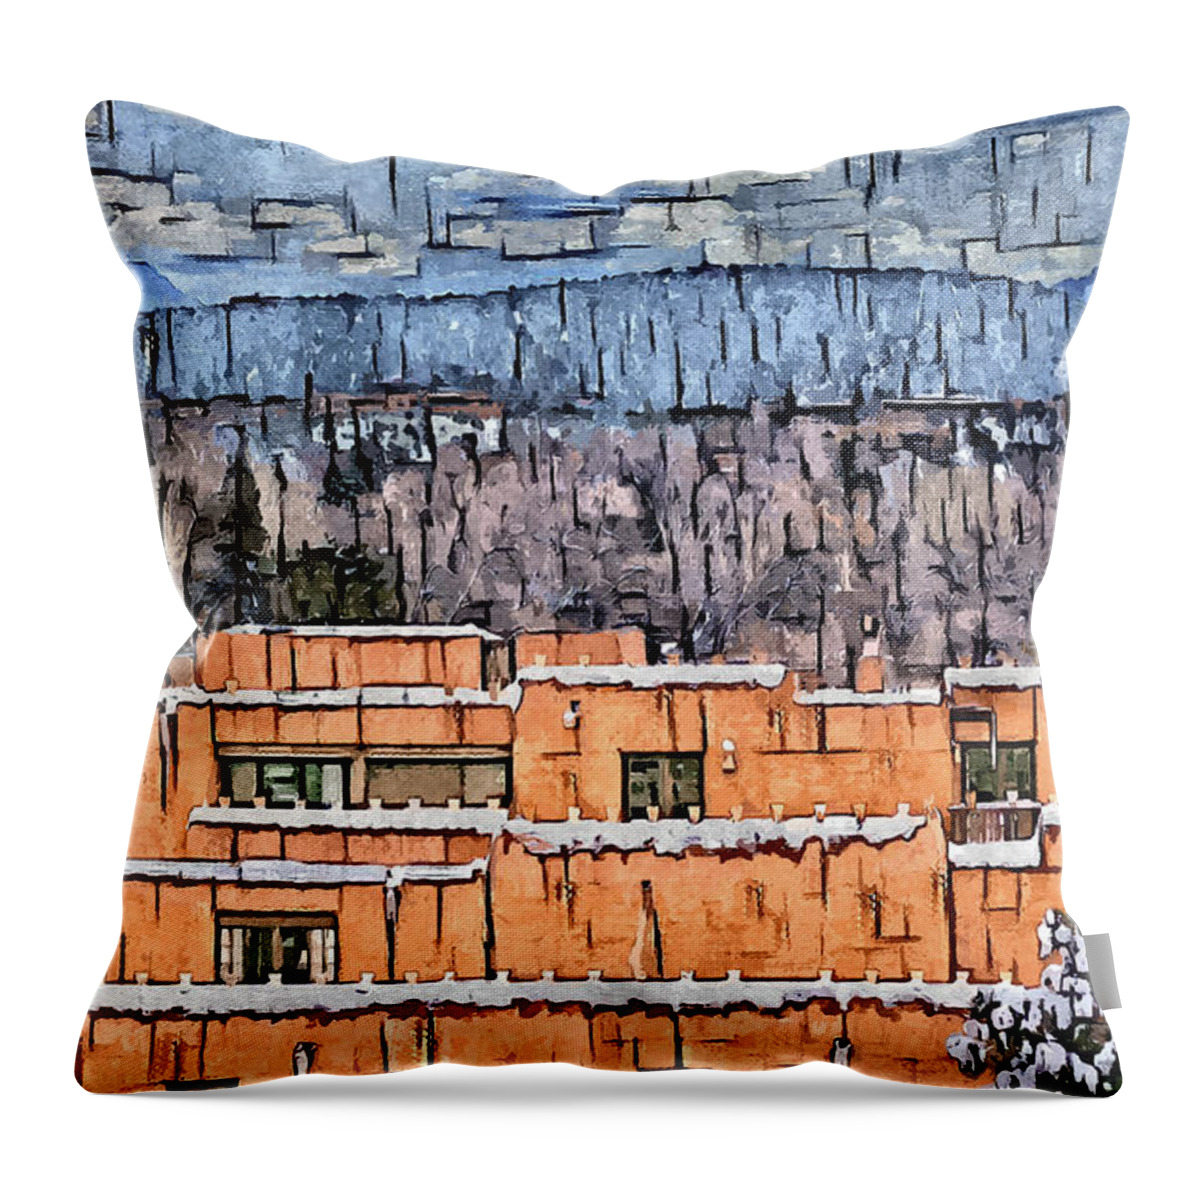 Southwest Throw Pillow featuring the digital art Santa Fe Luminarias by Aerial Santa Fe